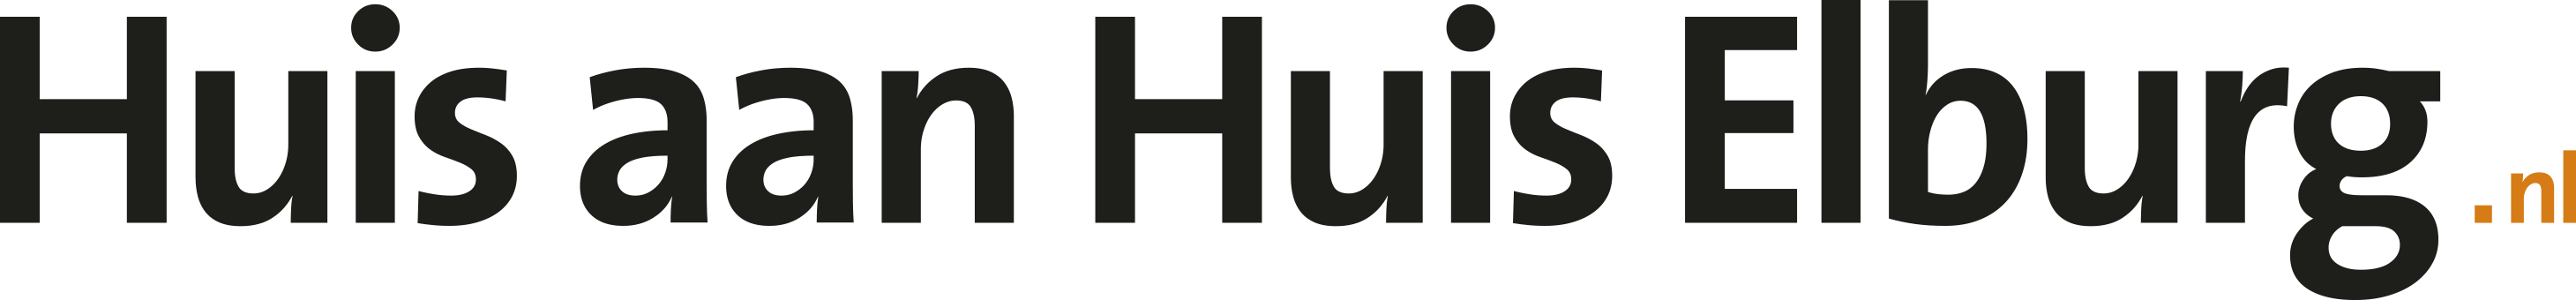 Logo huisaanhuiselburg.nl